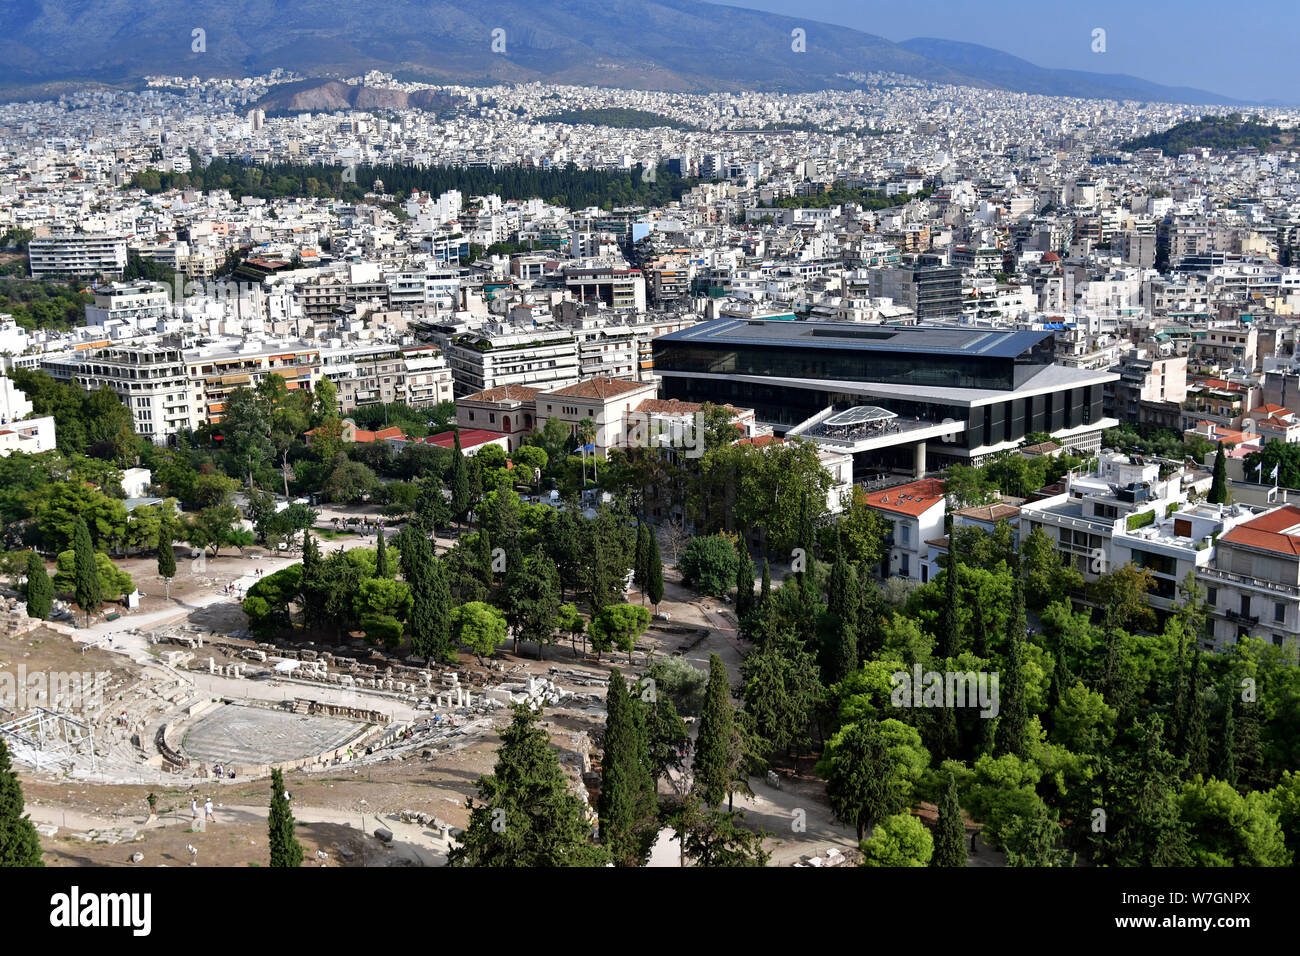 Griechenland, Athen: Das Akropolis-museum von Bernard Tschumi Architects entworfen, von der Akropolis aus gesehen. Stockfoto